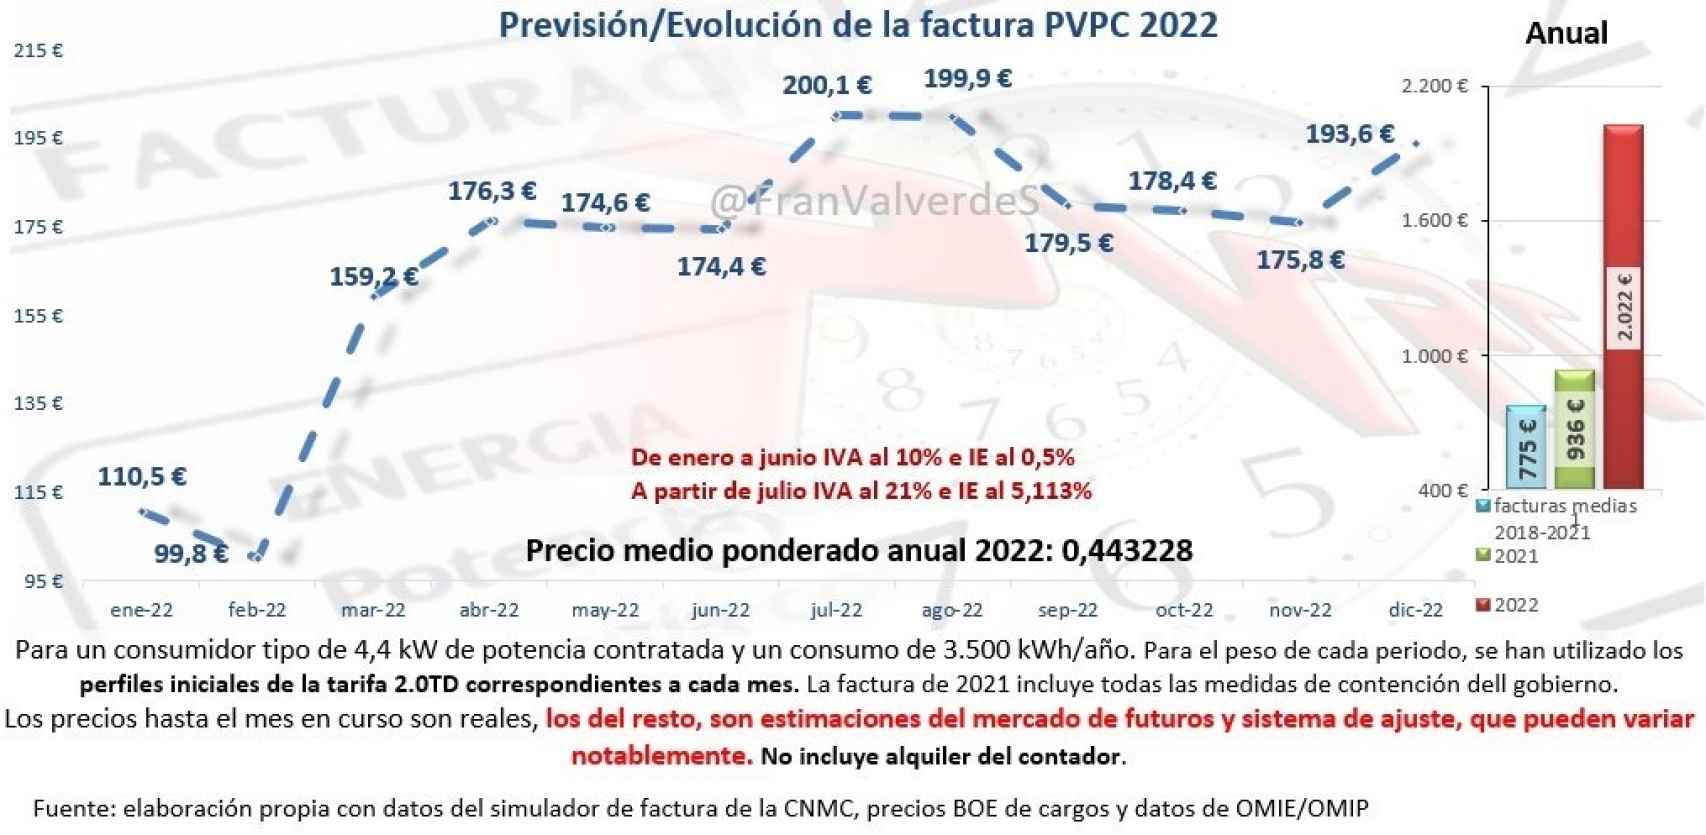 Previsión:Evolución precios del PVPC